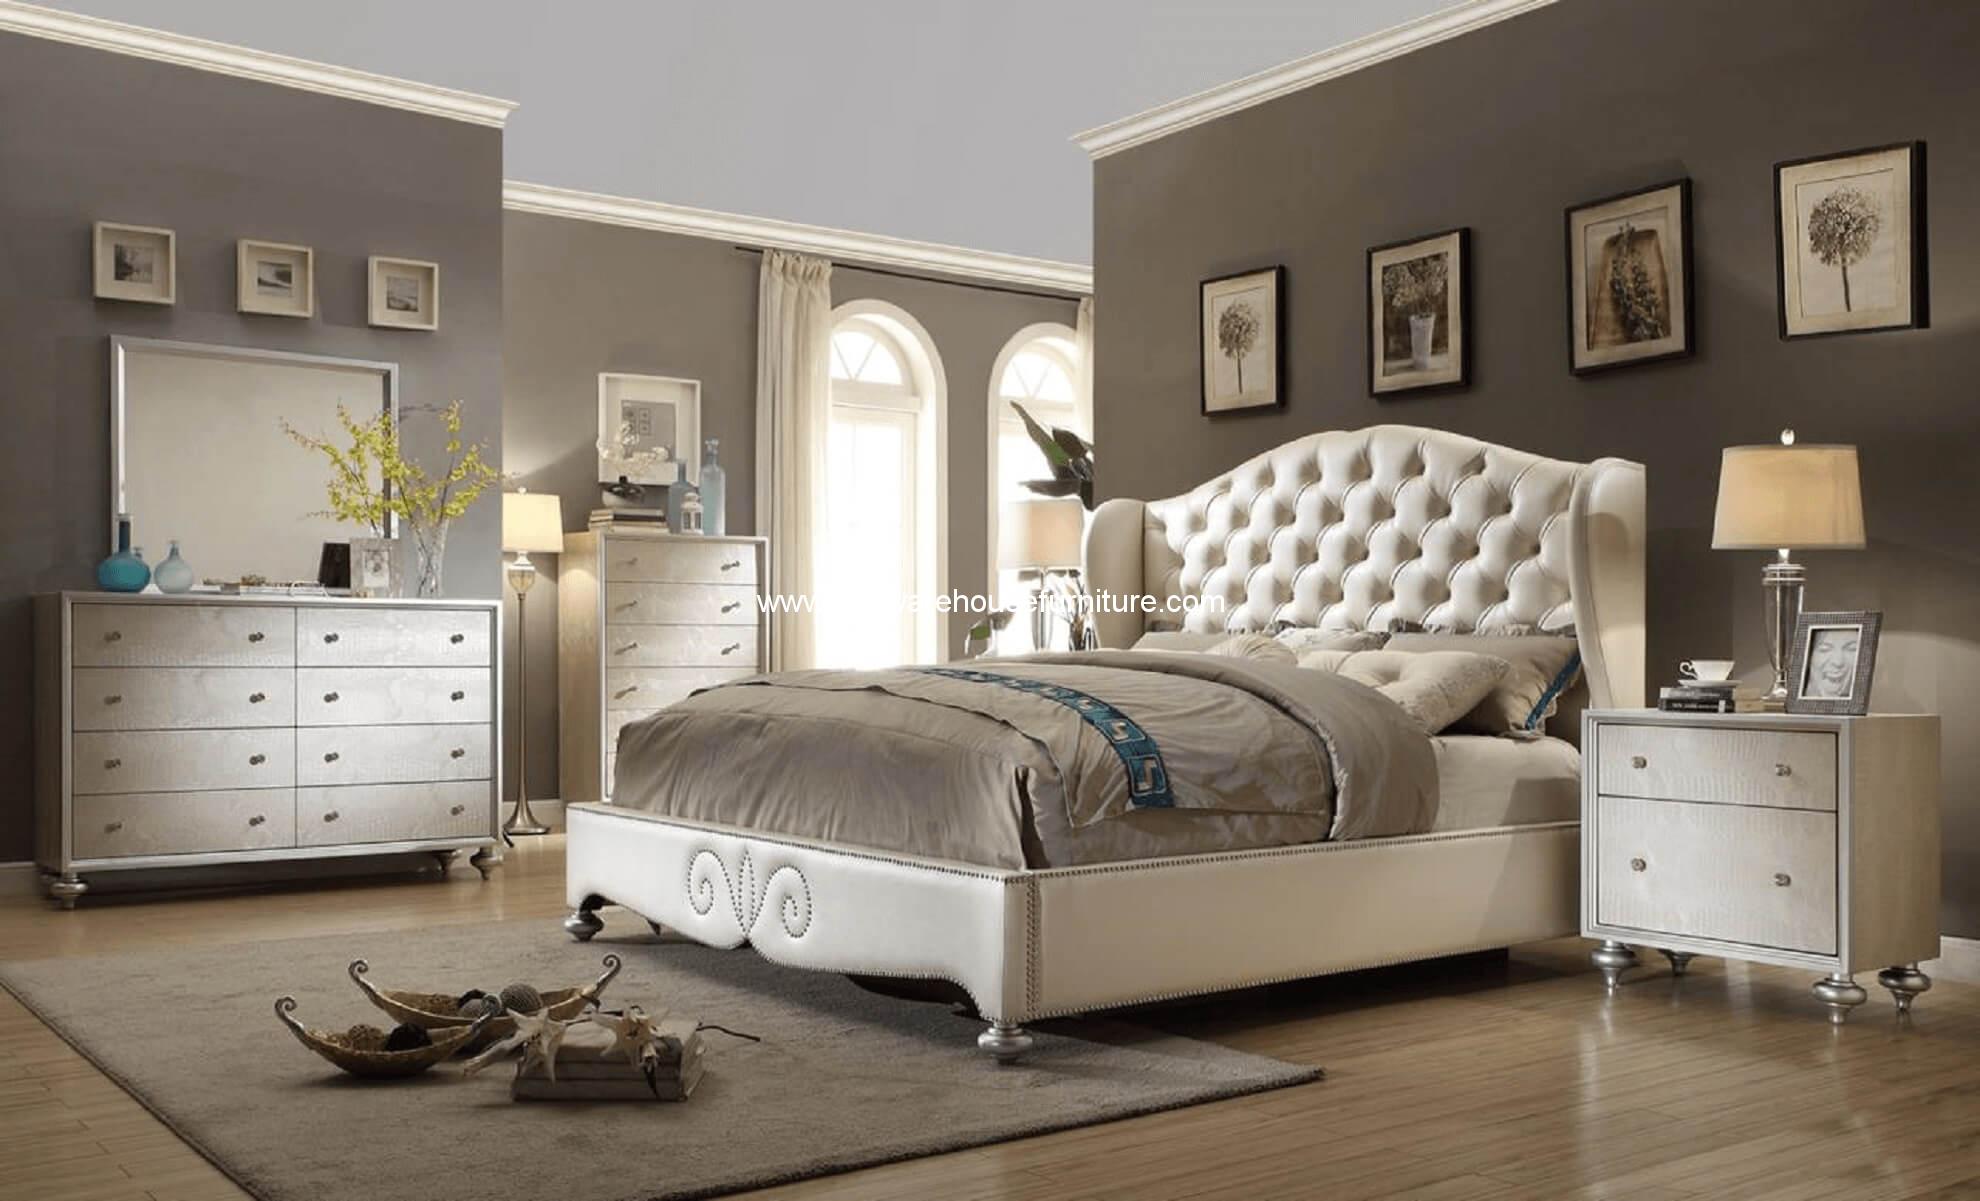 regine shelter bedroom furniture